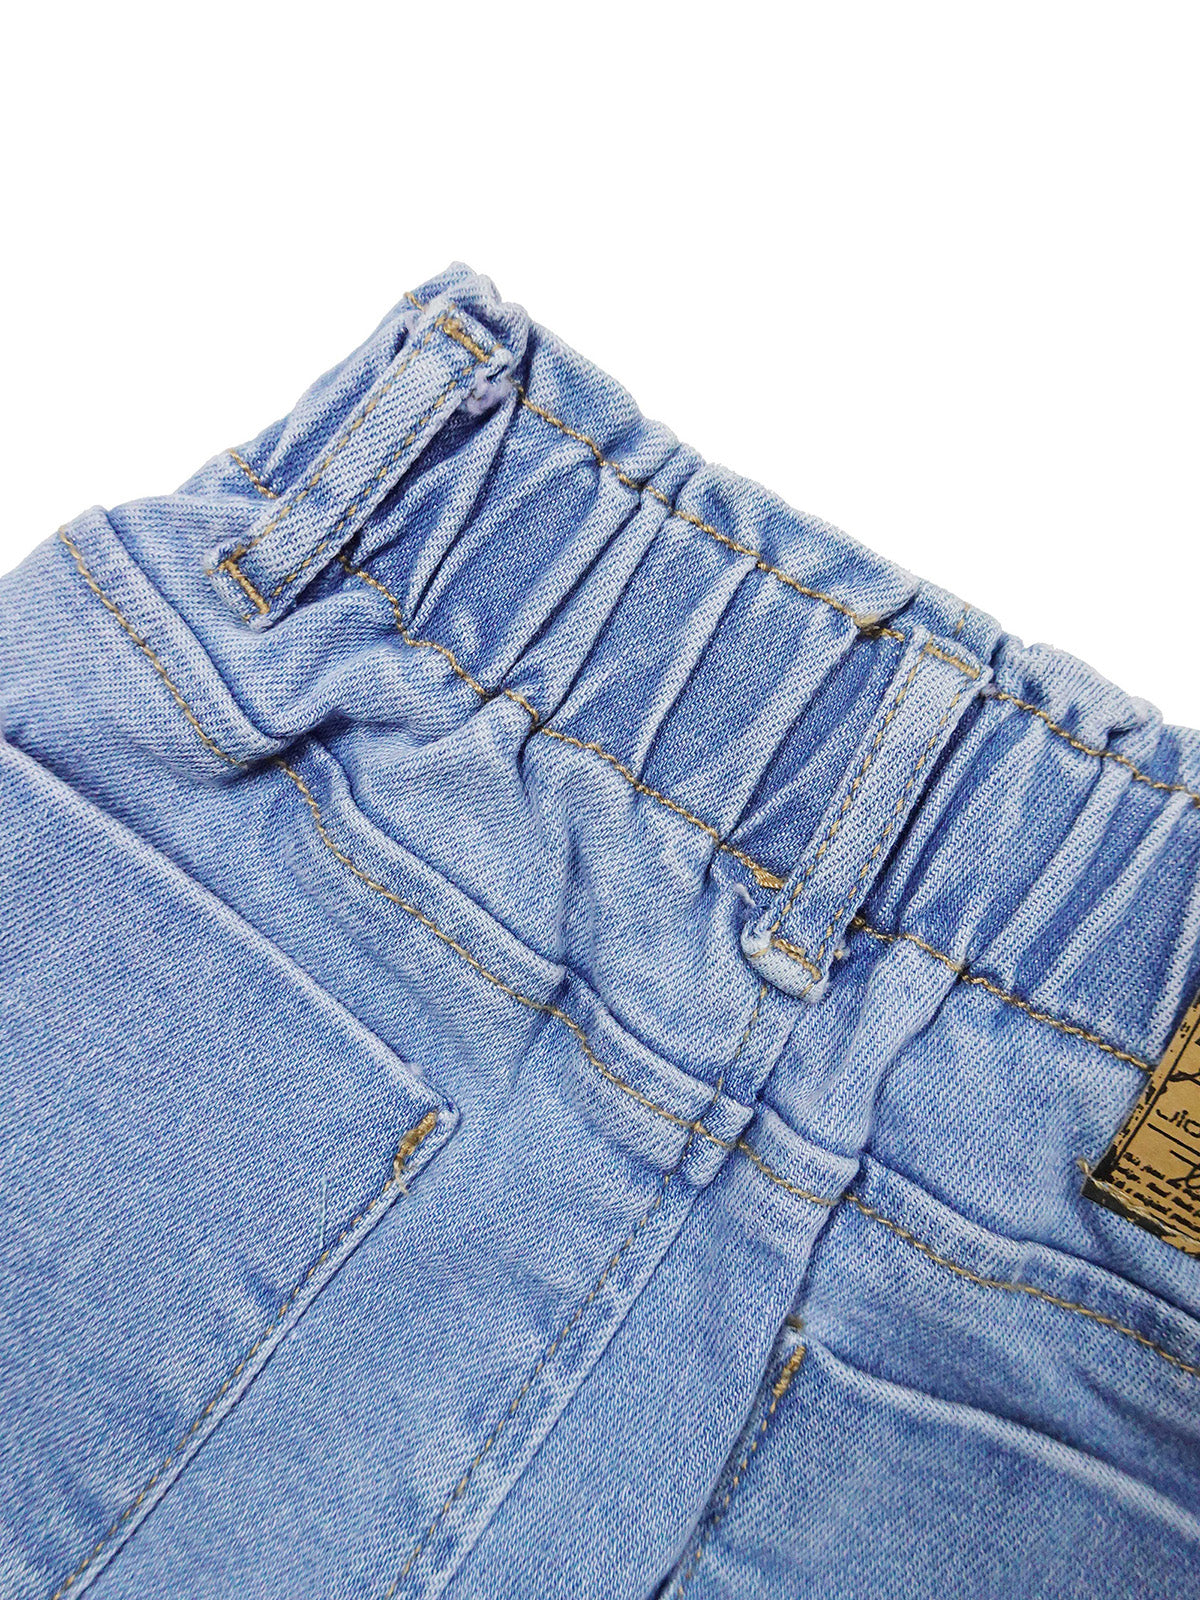 Boy Jeans Soft Ripped Denim Elastic Band Pants